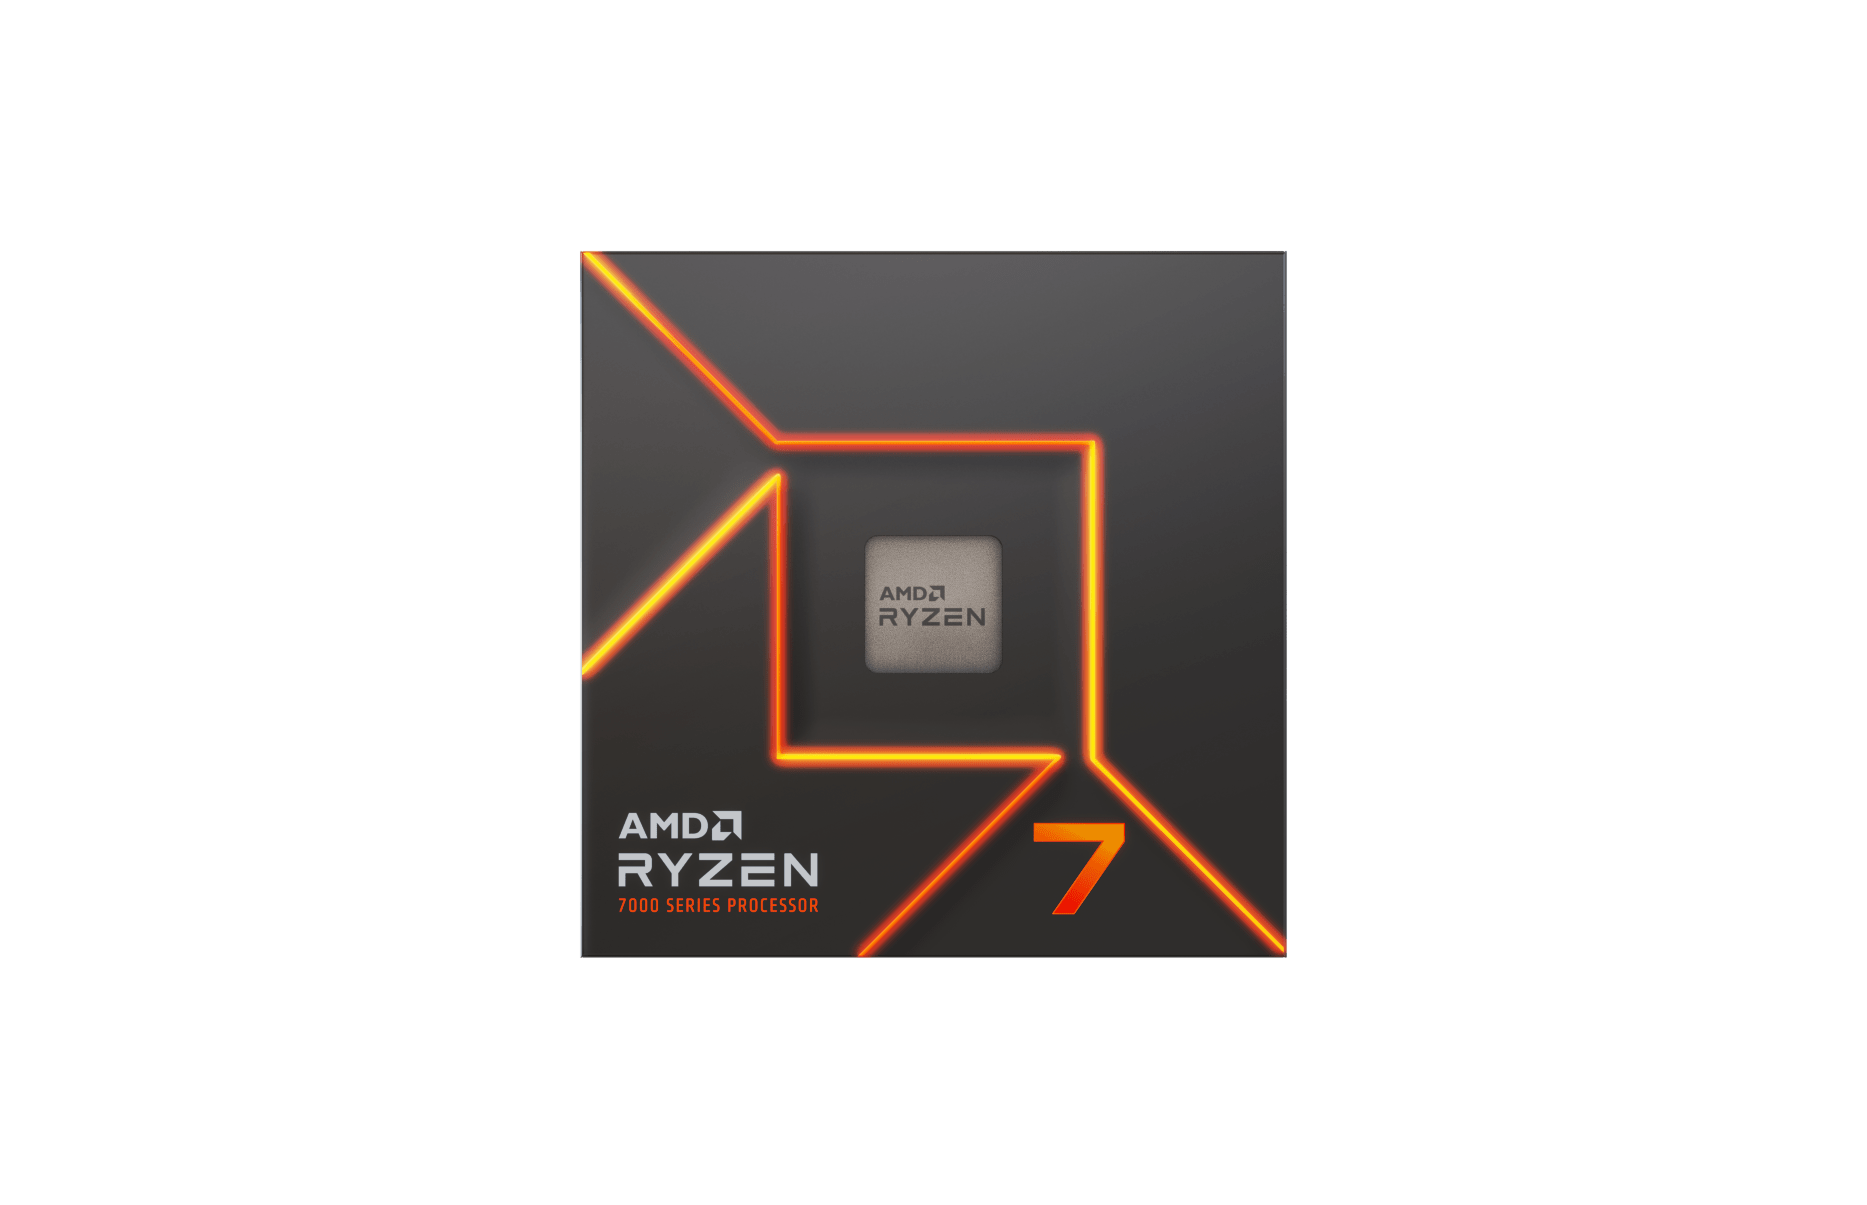 AMD Ryzen 7 7700 - 5.3GHz - Processeur AMD 